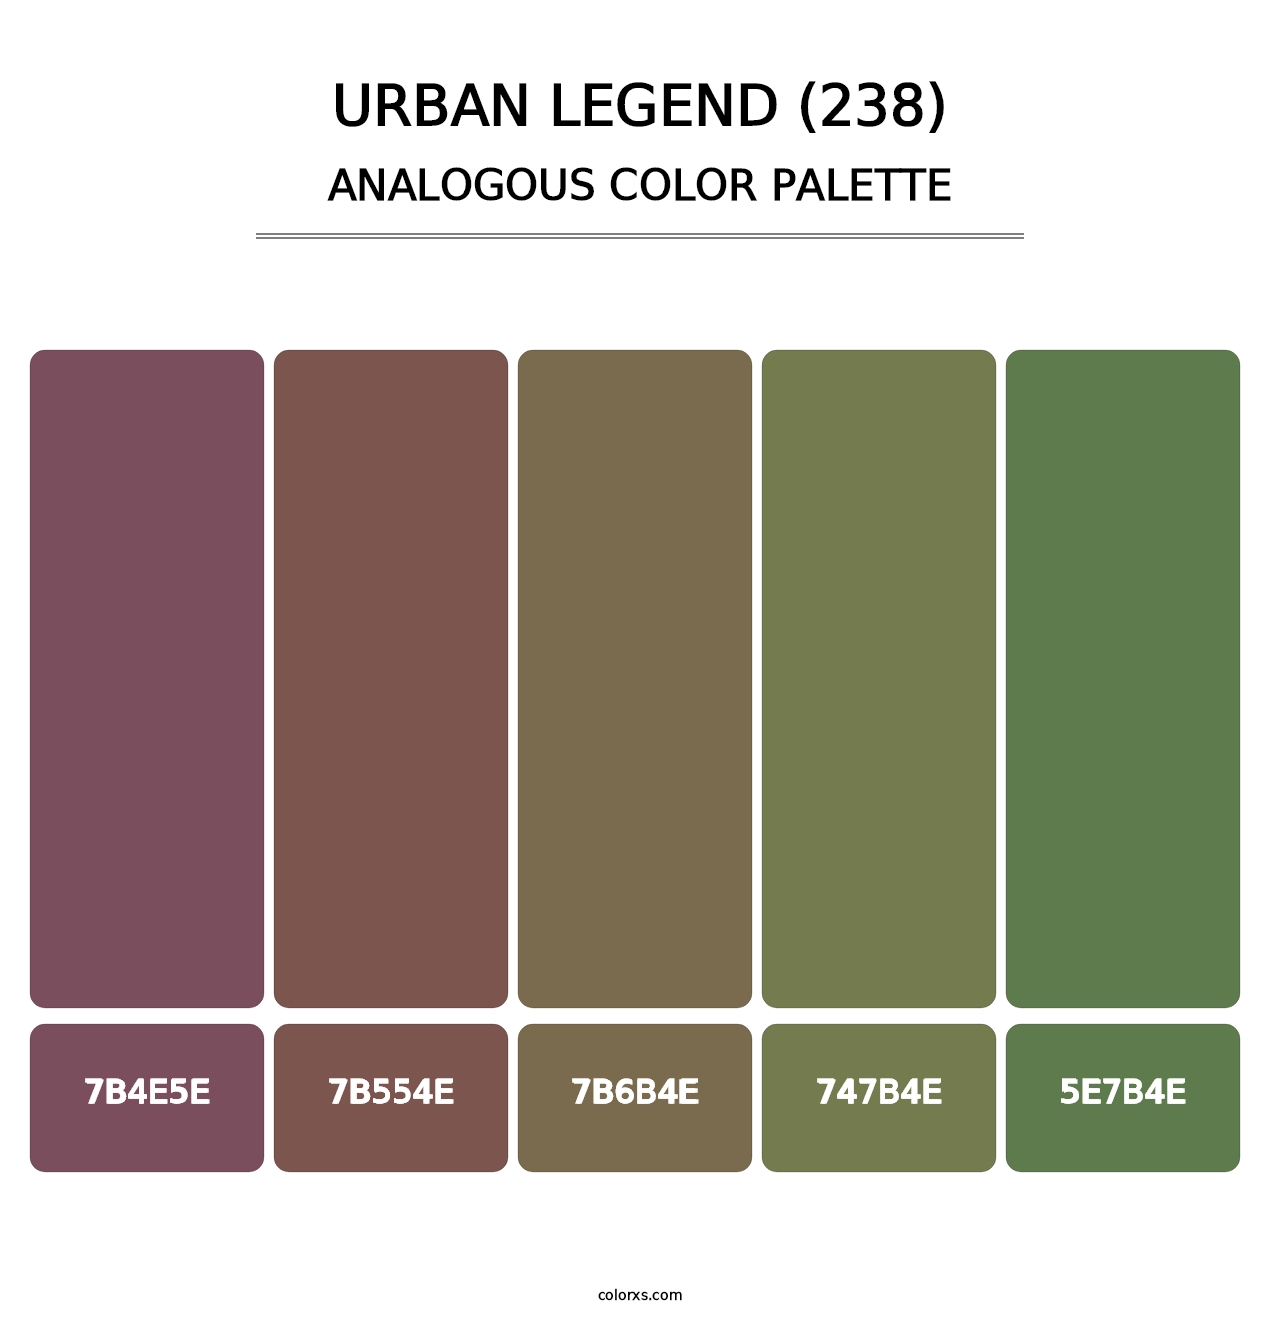 Urban Legend (238) - Analogous Color Palette